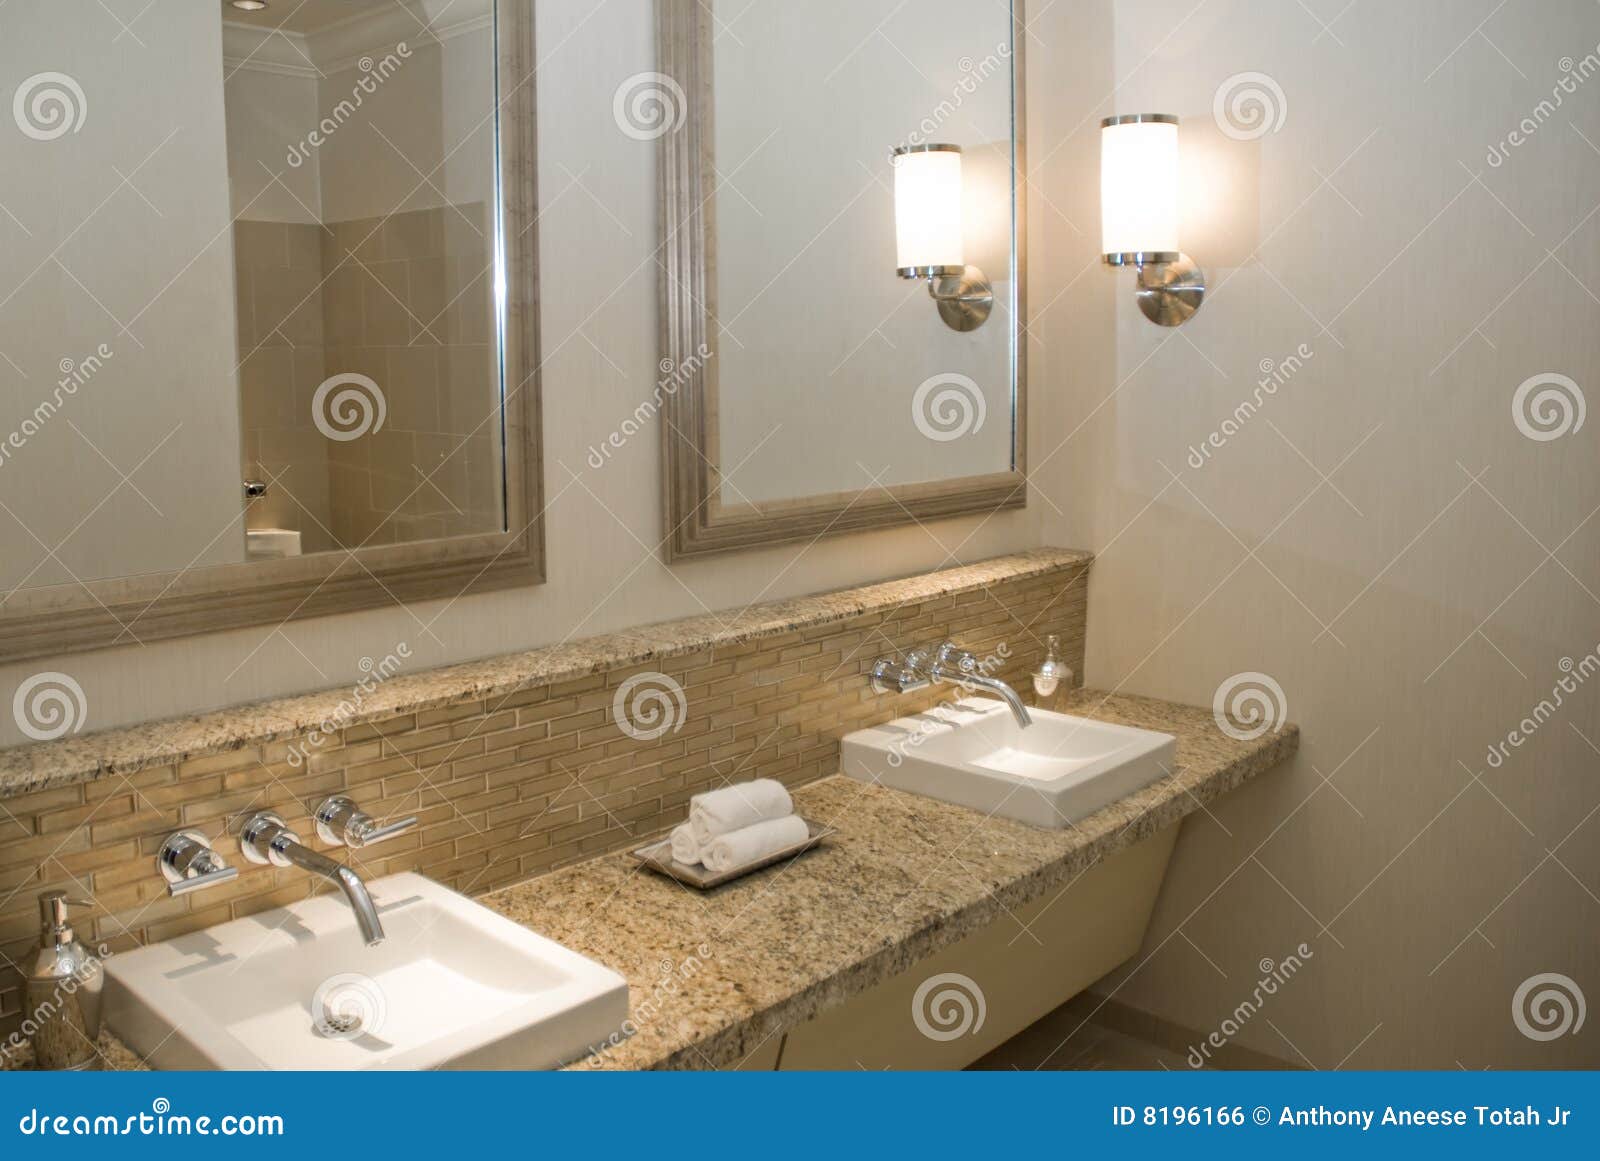 upscale bathroom vanity